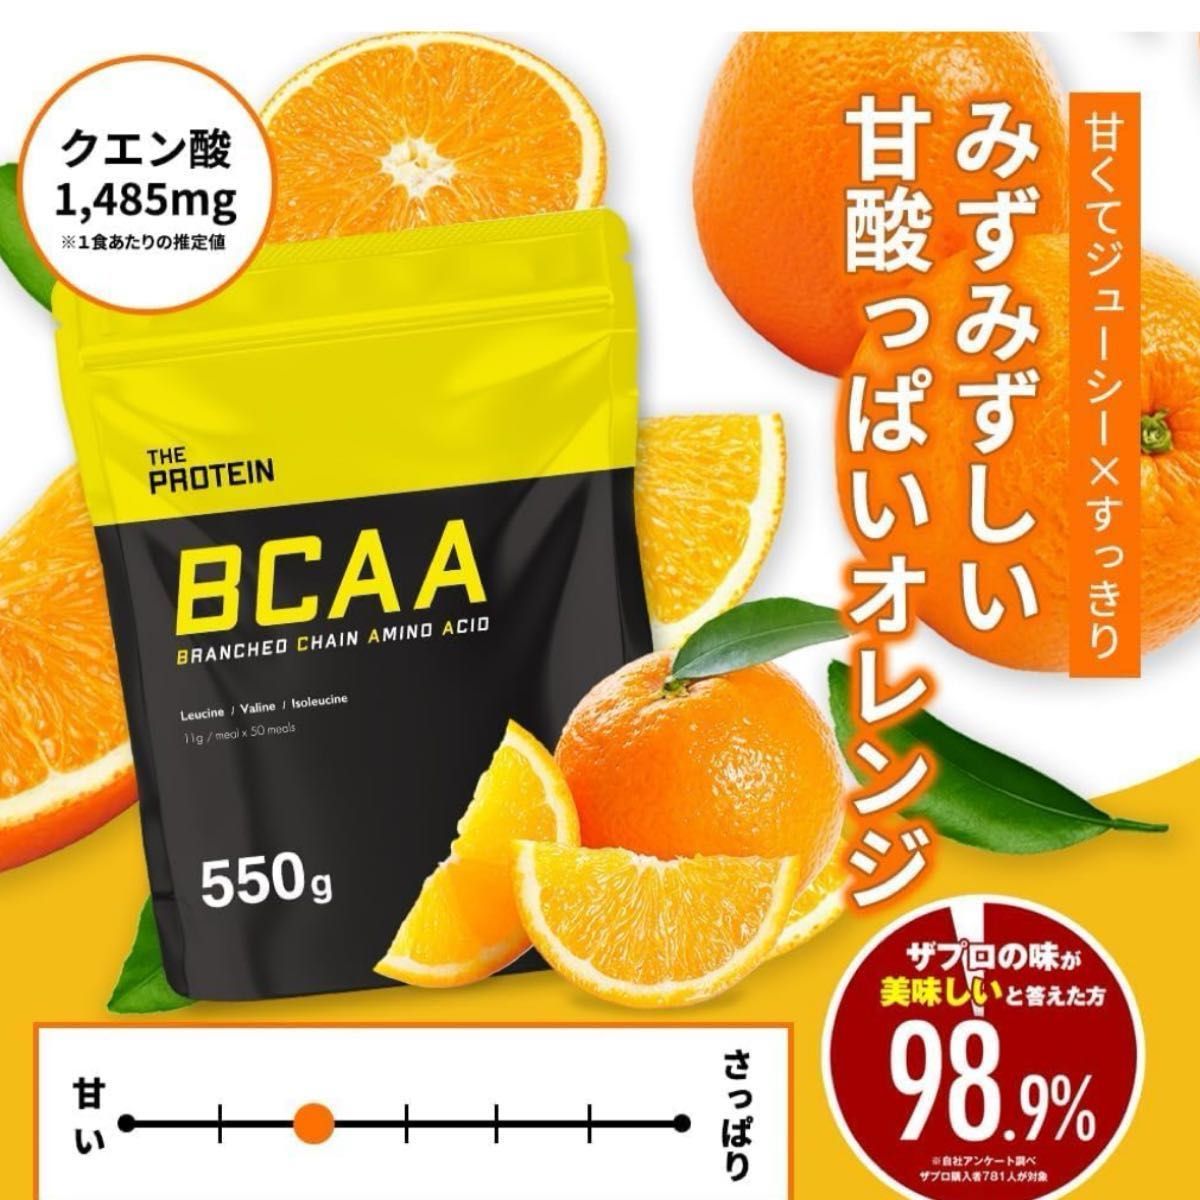 訳あり スプーン無し ザプロ BCAA オレンジ 風味 武内製薬 約50回分 アミノ酸 クエン酸 